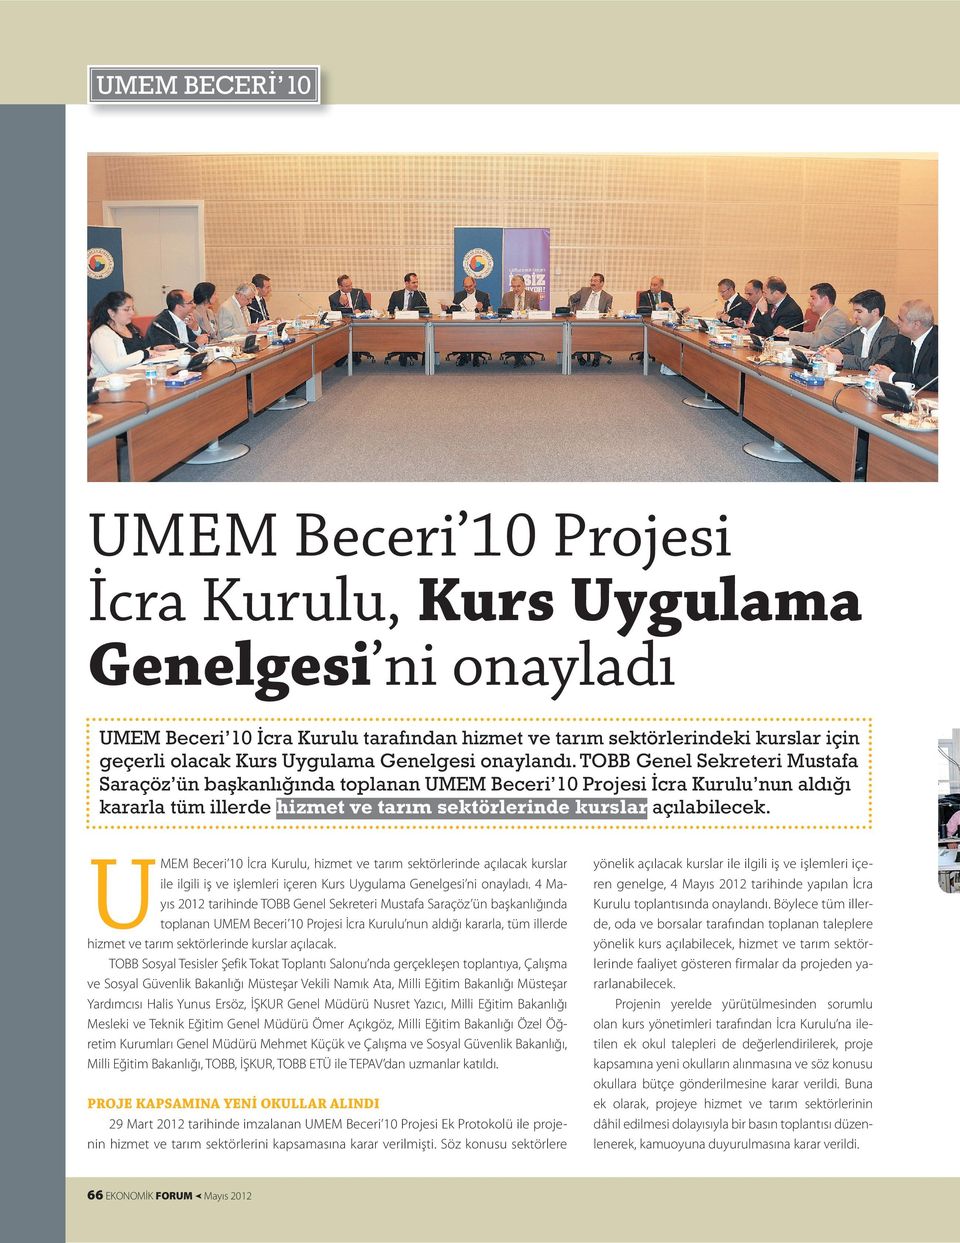 TOBB Genel Sekreteri Mustafa Saraçöz ün başkanlığında toplanan UMEM Beceri 10 Projesi İcra Kurulu nun aldığı kararla tüm illerde hizmet ve tarım sektörlerinde kurslar açılabilecek.